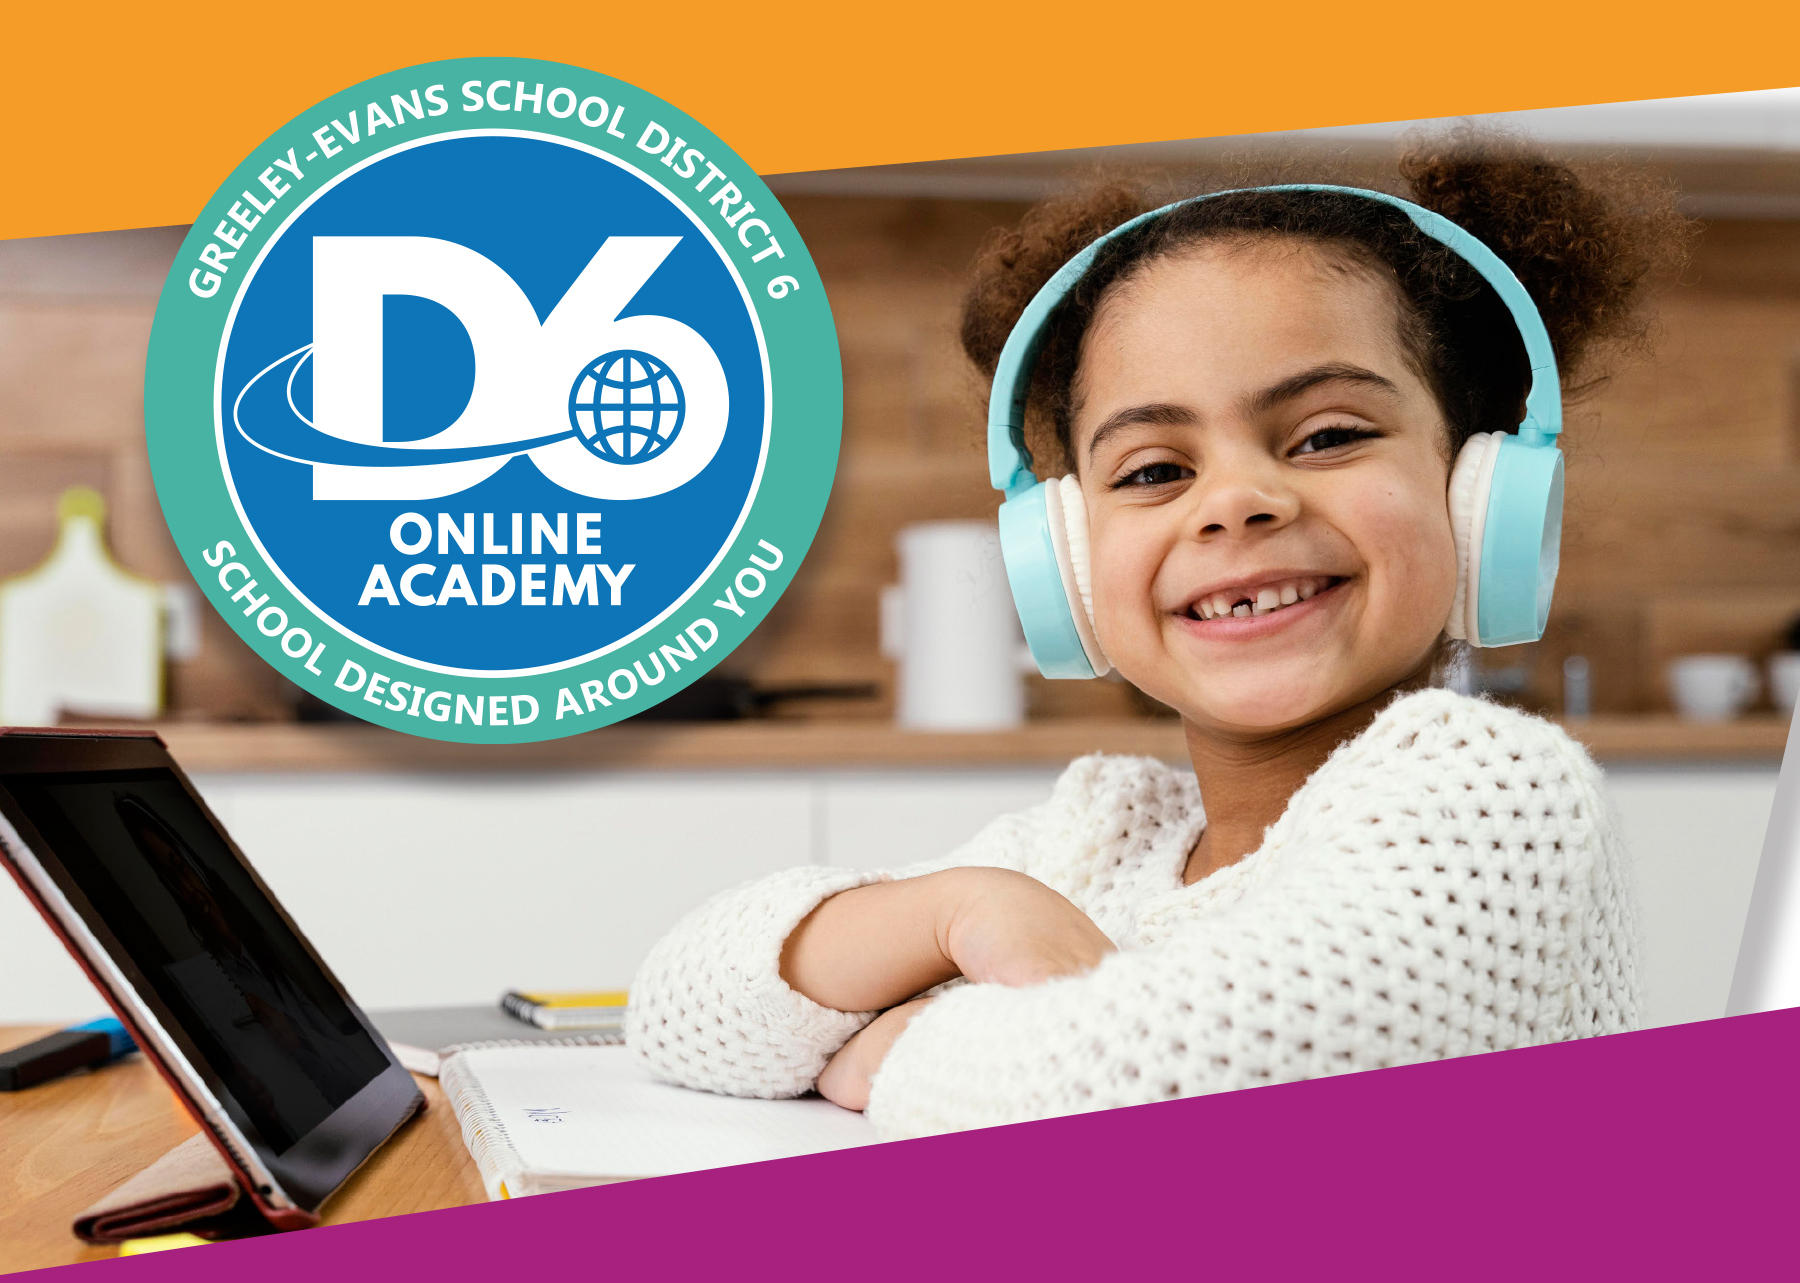 D6 Online Academy